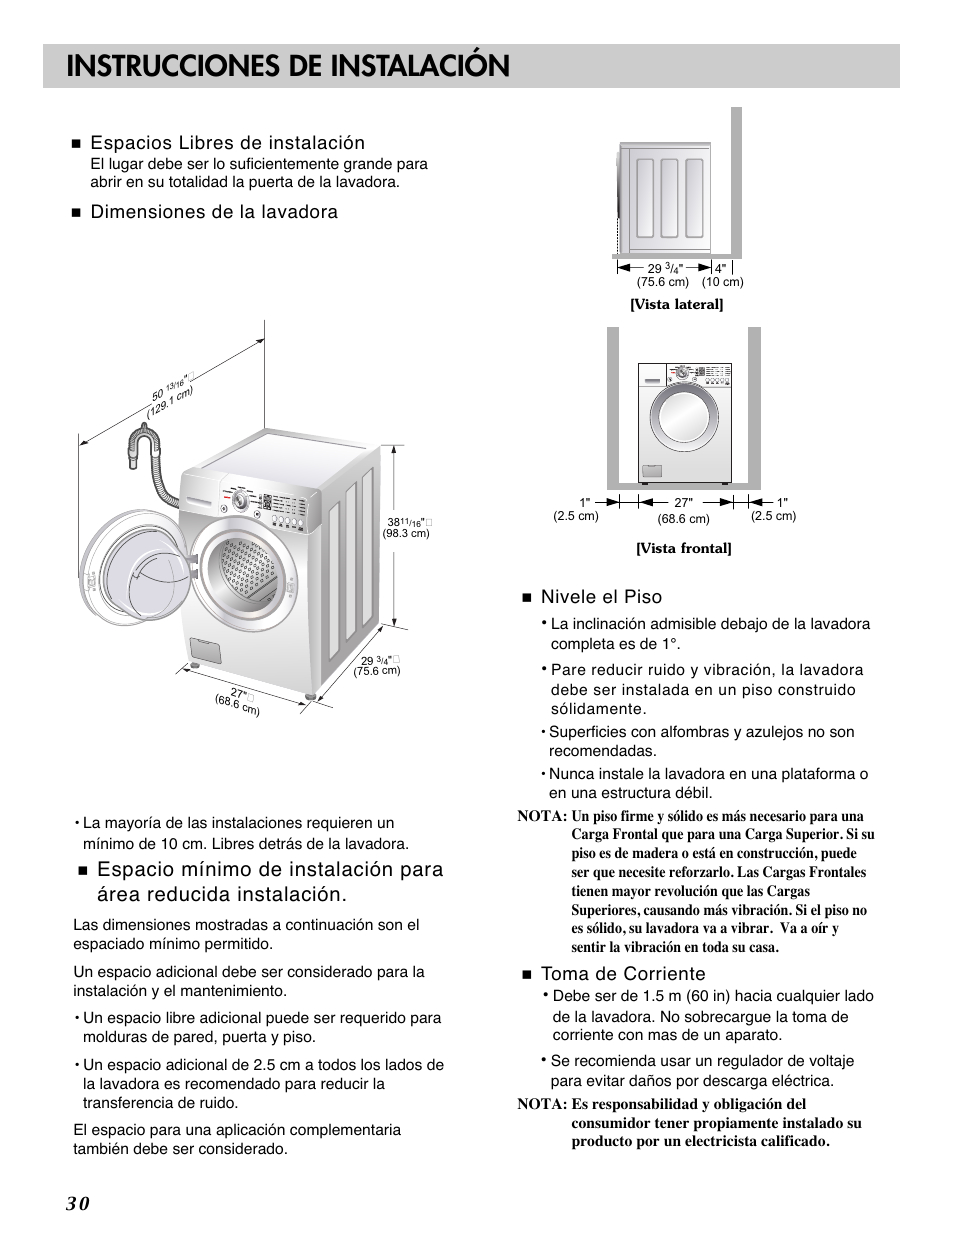 Instrucciones de instalación, Espacios libres de instalación, Dimensiones  de la lavadora | LG WM2101HW User Manual | Page 30 / 72 | Original mode